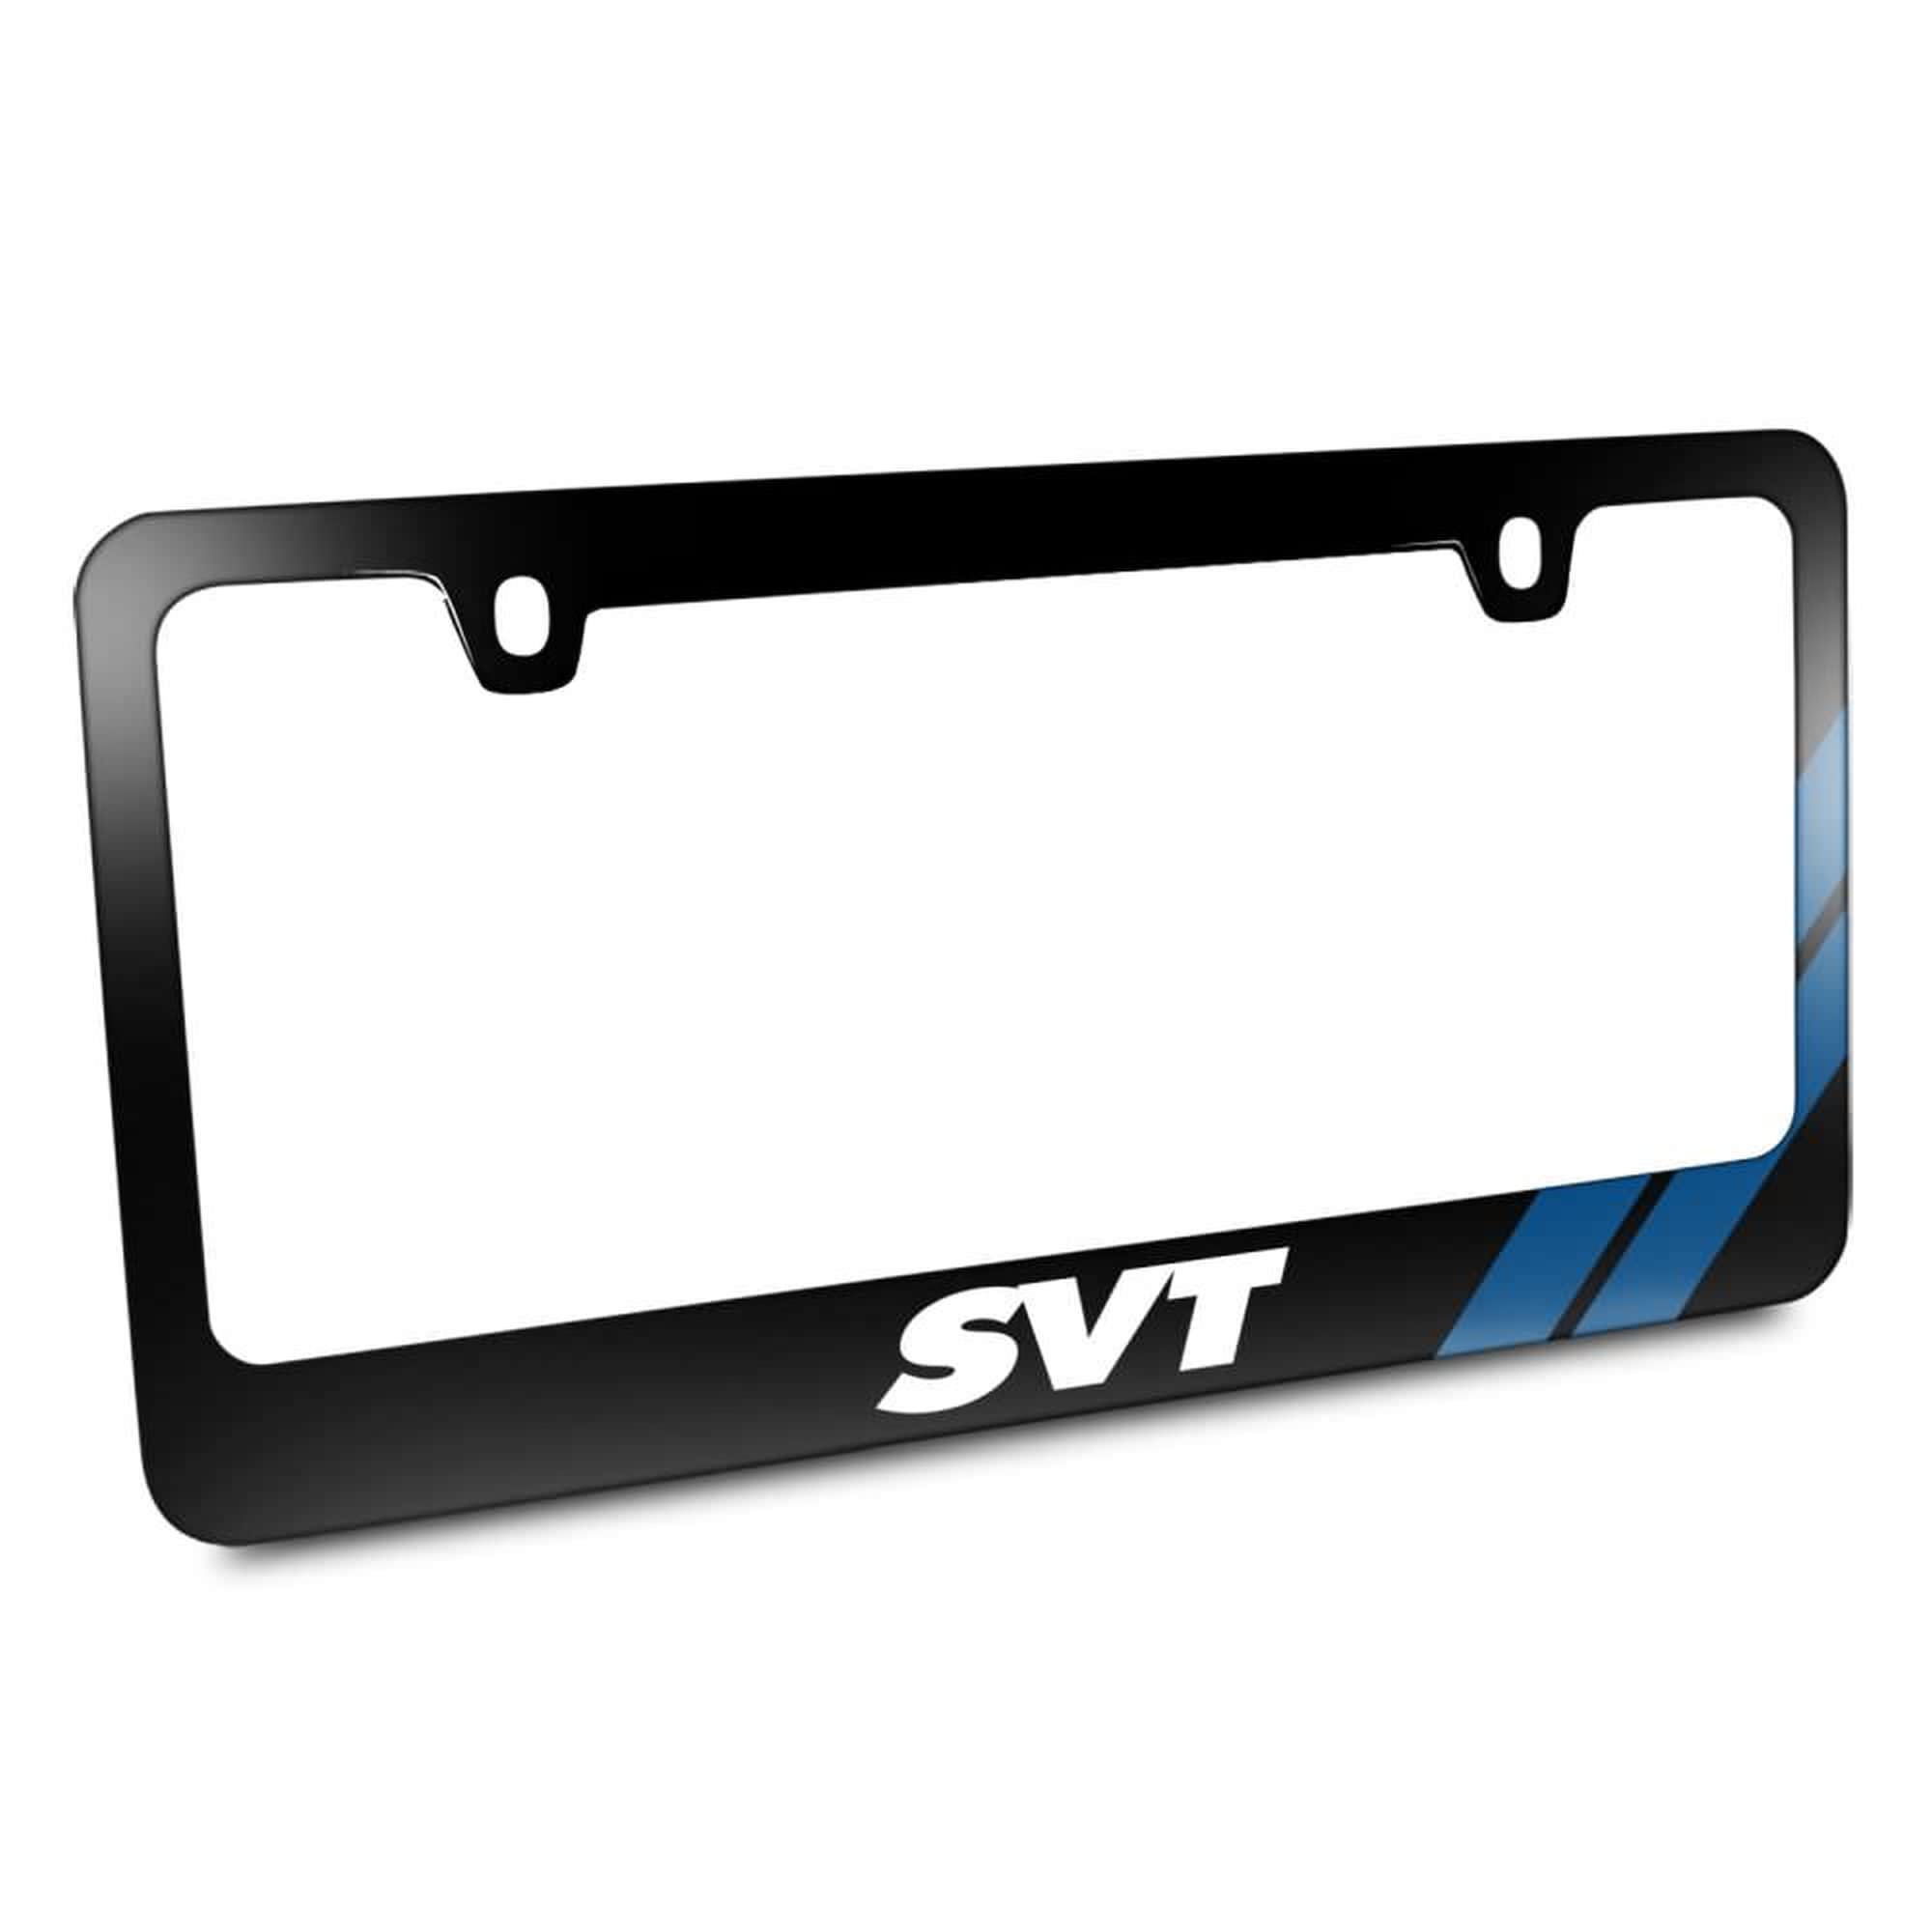 Ford,SVT,License Plate Frame